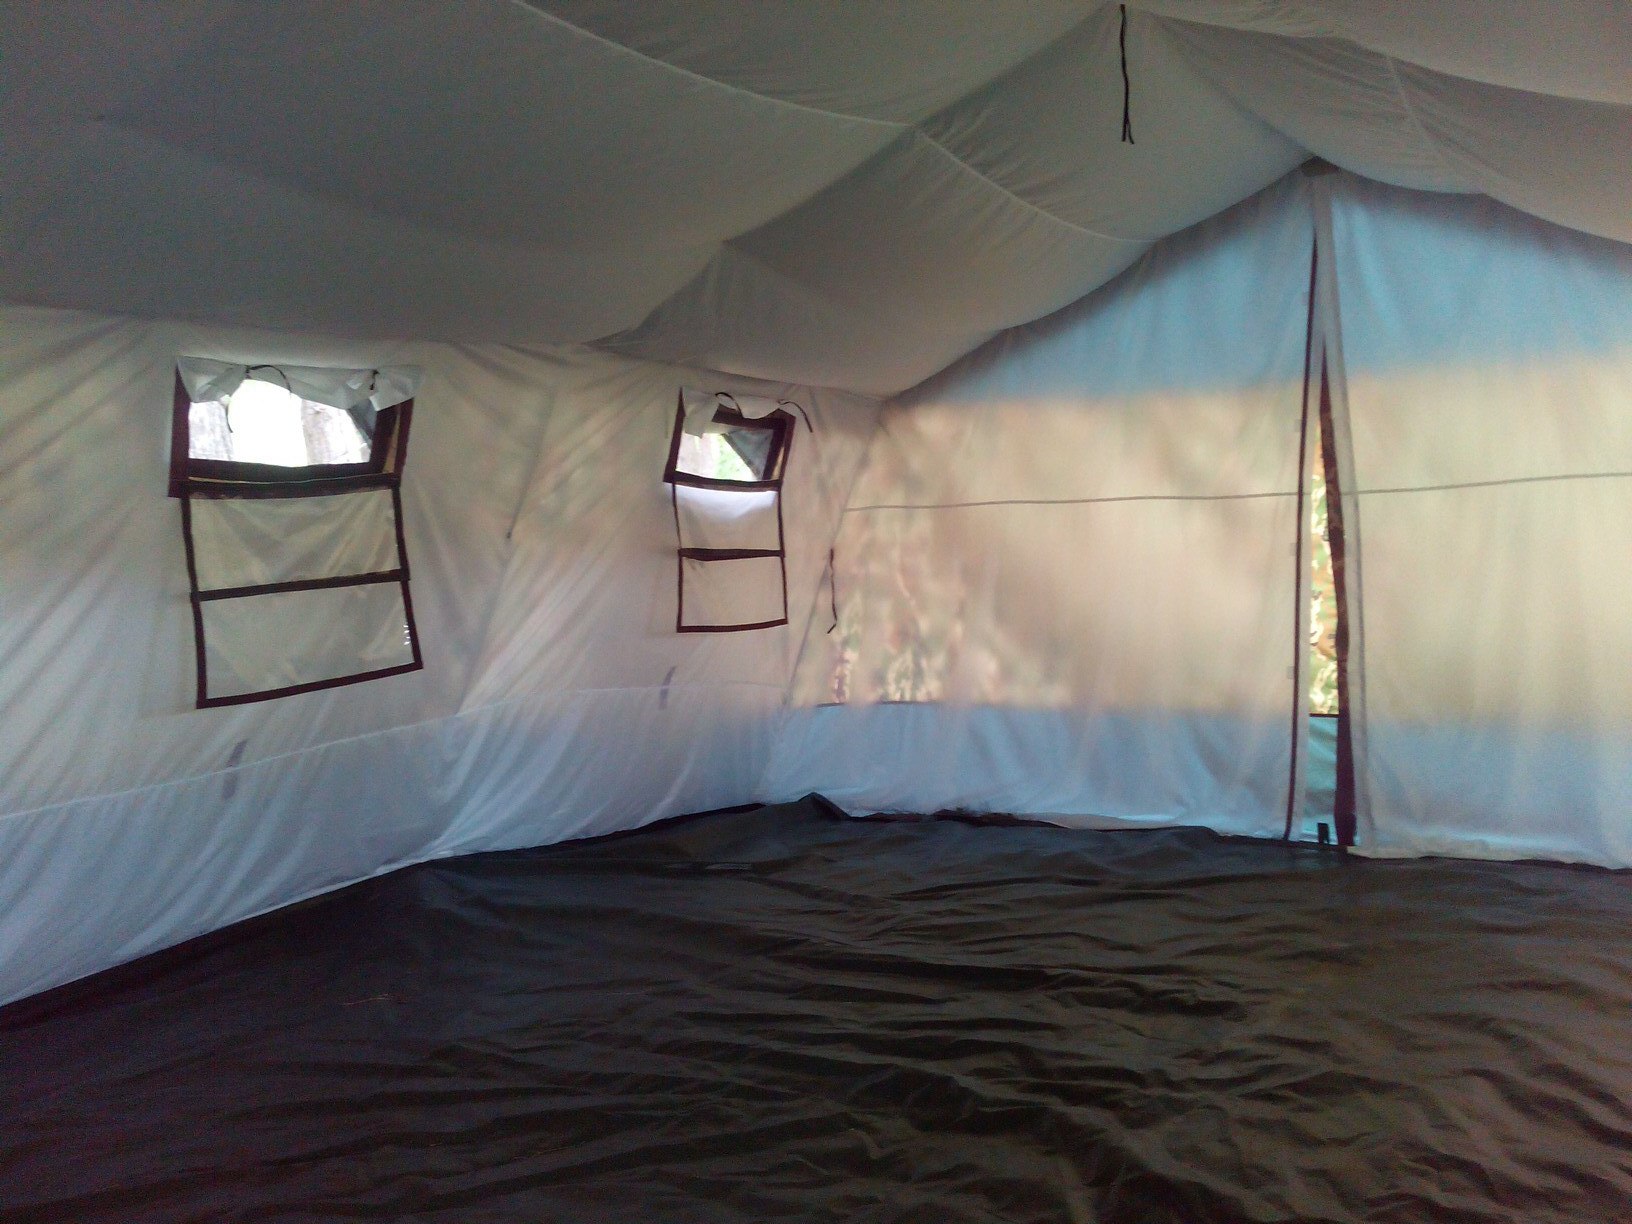 Армейская палатка Терма 2М-45